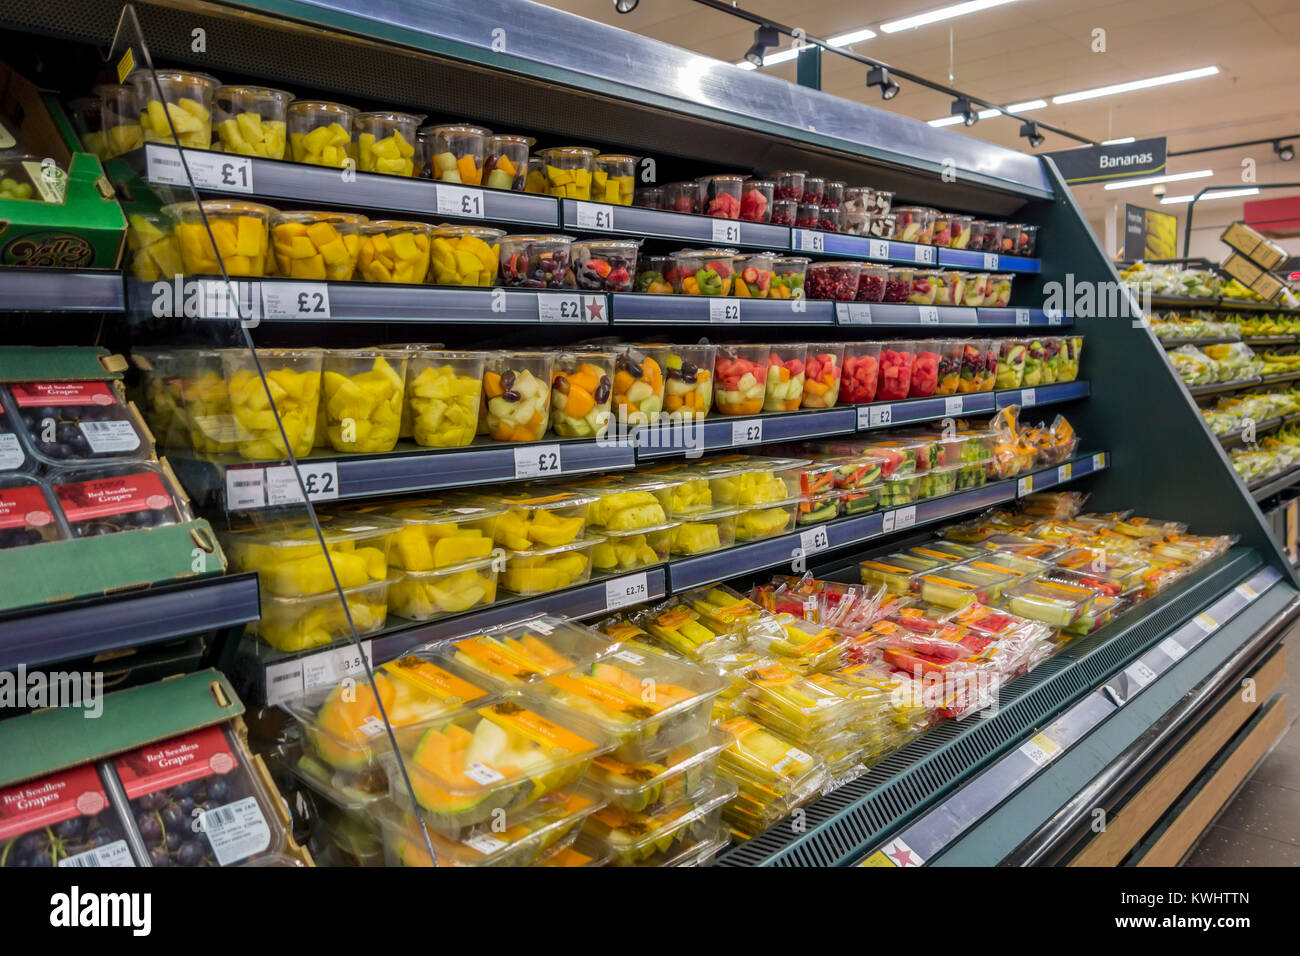 Prepared packaged fruit on supermarket shelves. Stock Photo